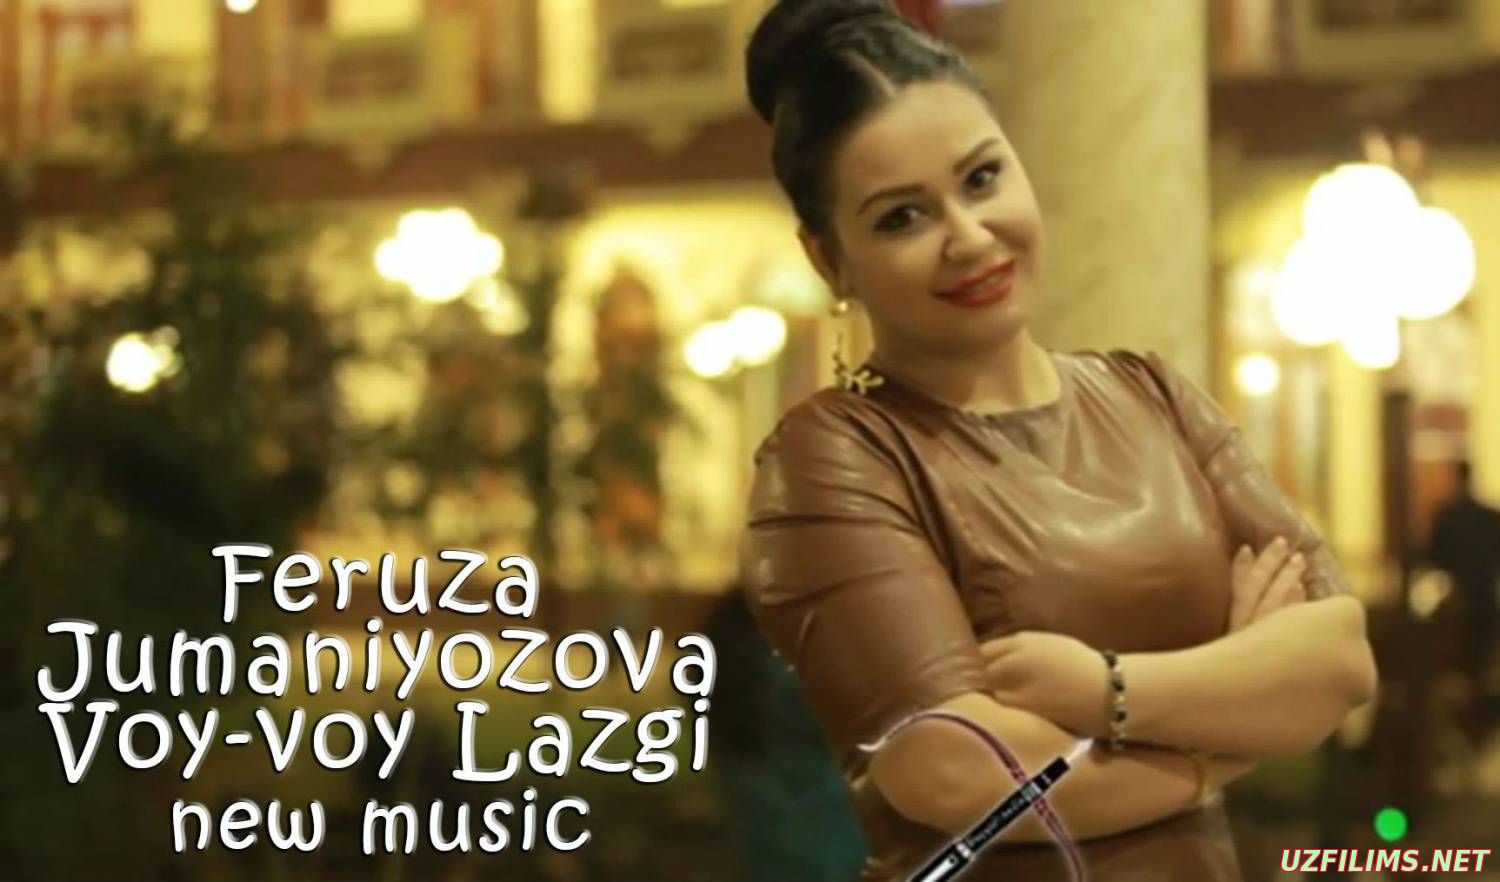 Feruza Jumaniyozova - Voy-voy Lazgi (Official Music 2015)